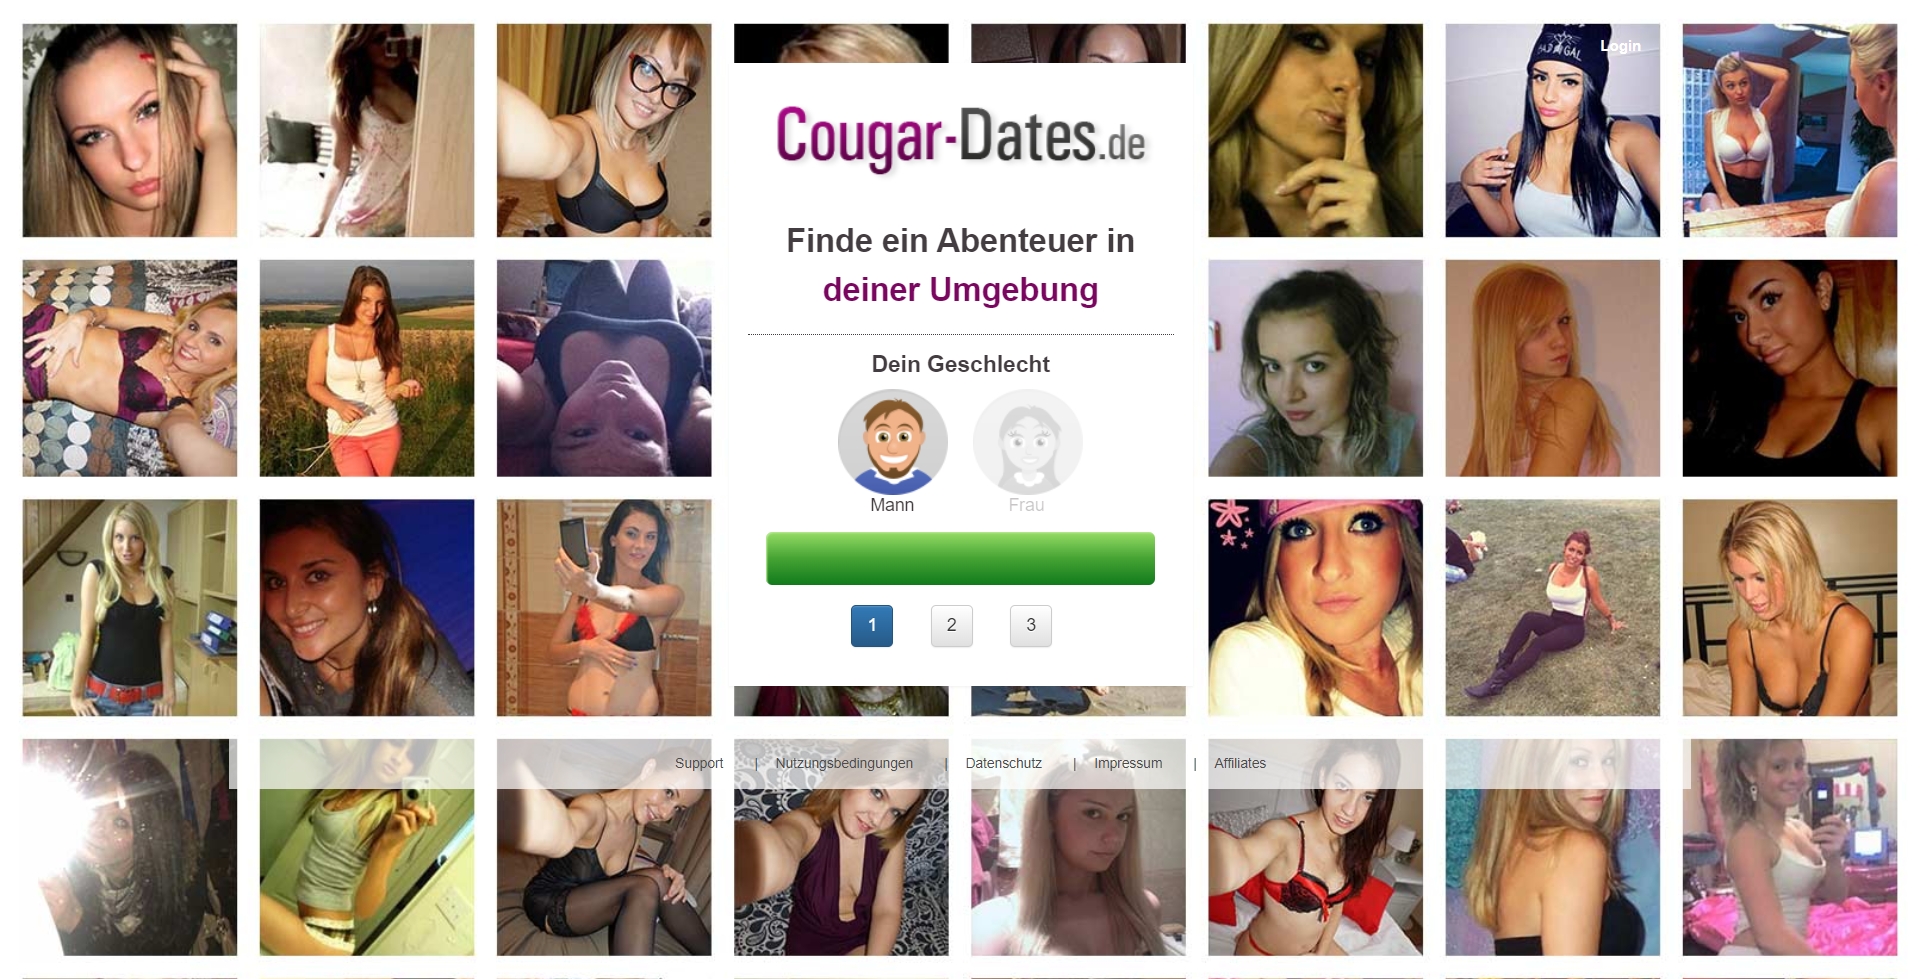 Cougar-Dates